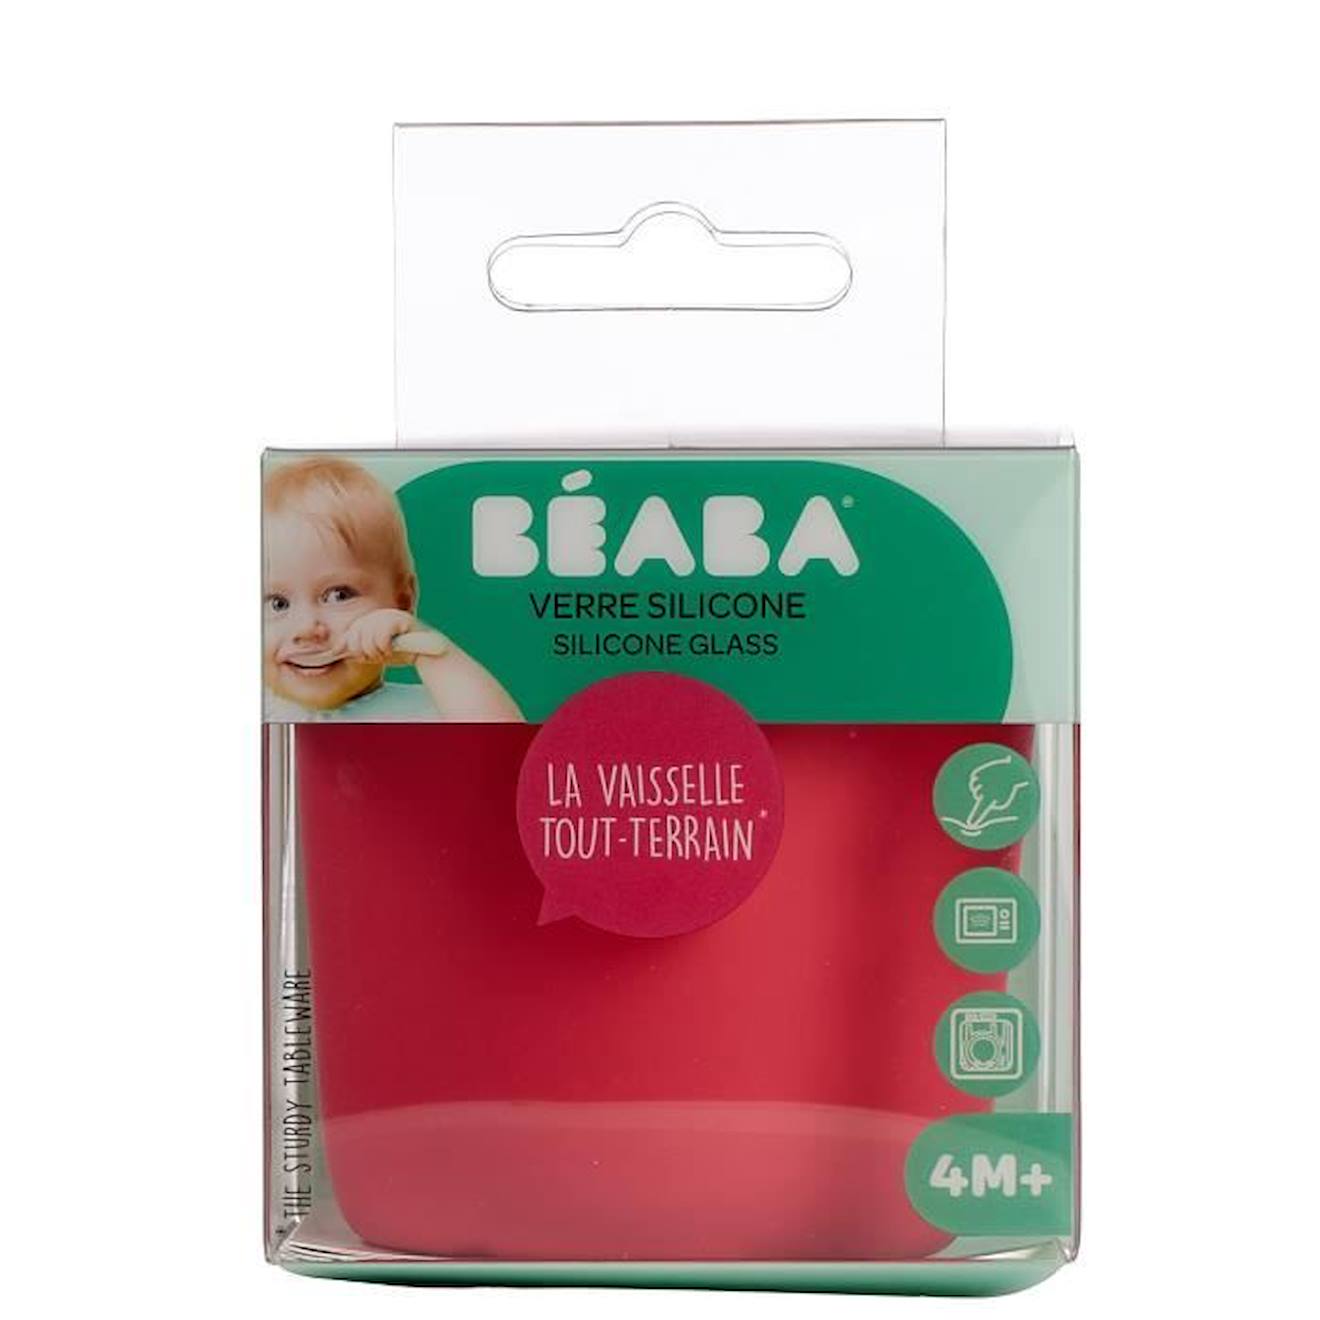 BEABA, Verre Ventouse pour Enfant, 100% silicone, matière douce et